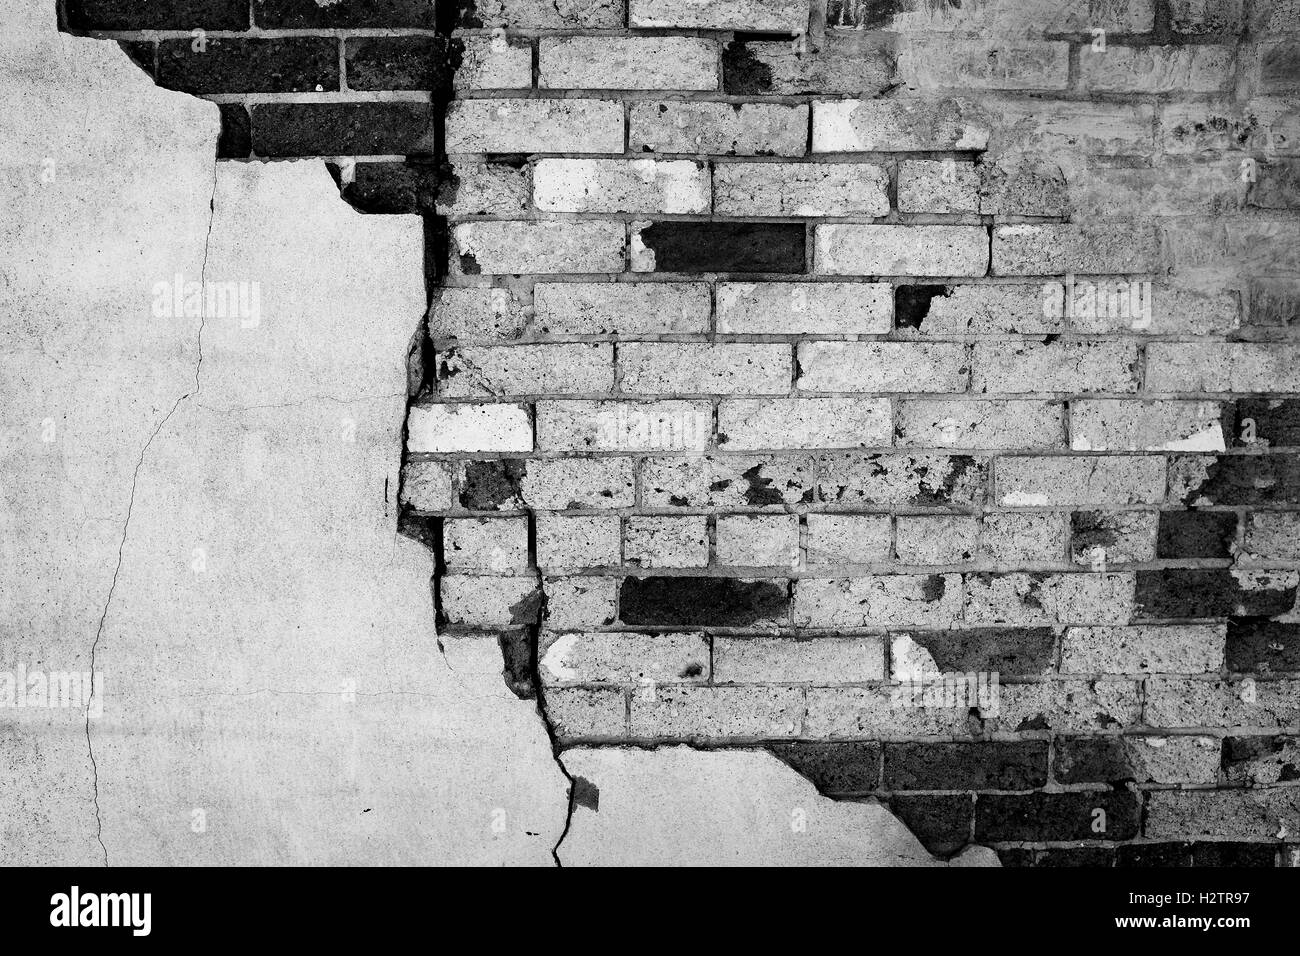 Dettaglio della parete Stucco gesso cade a pezzi vecchi mattoni di frantumazione Foto Stock